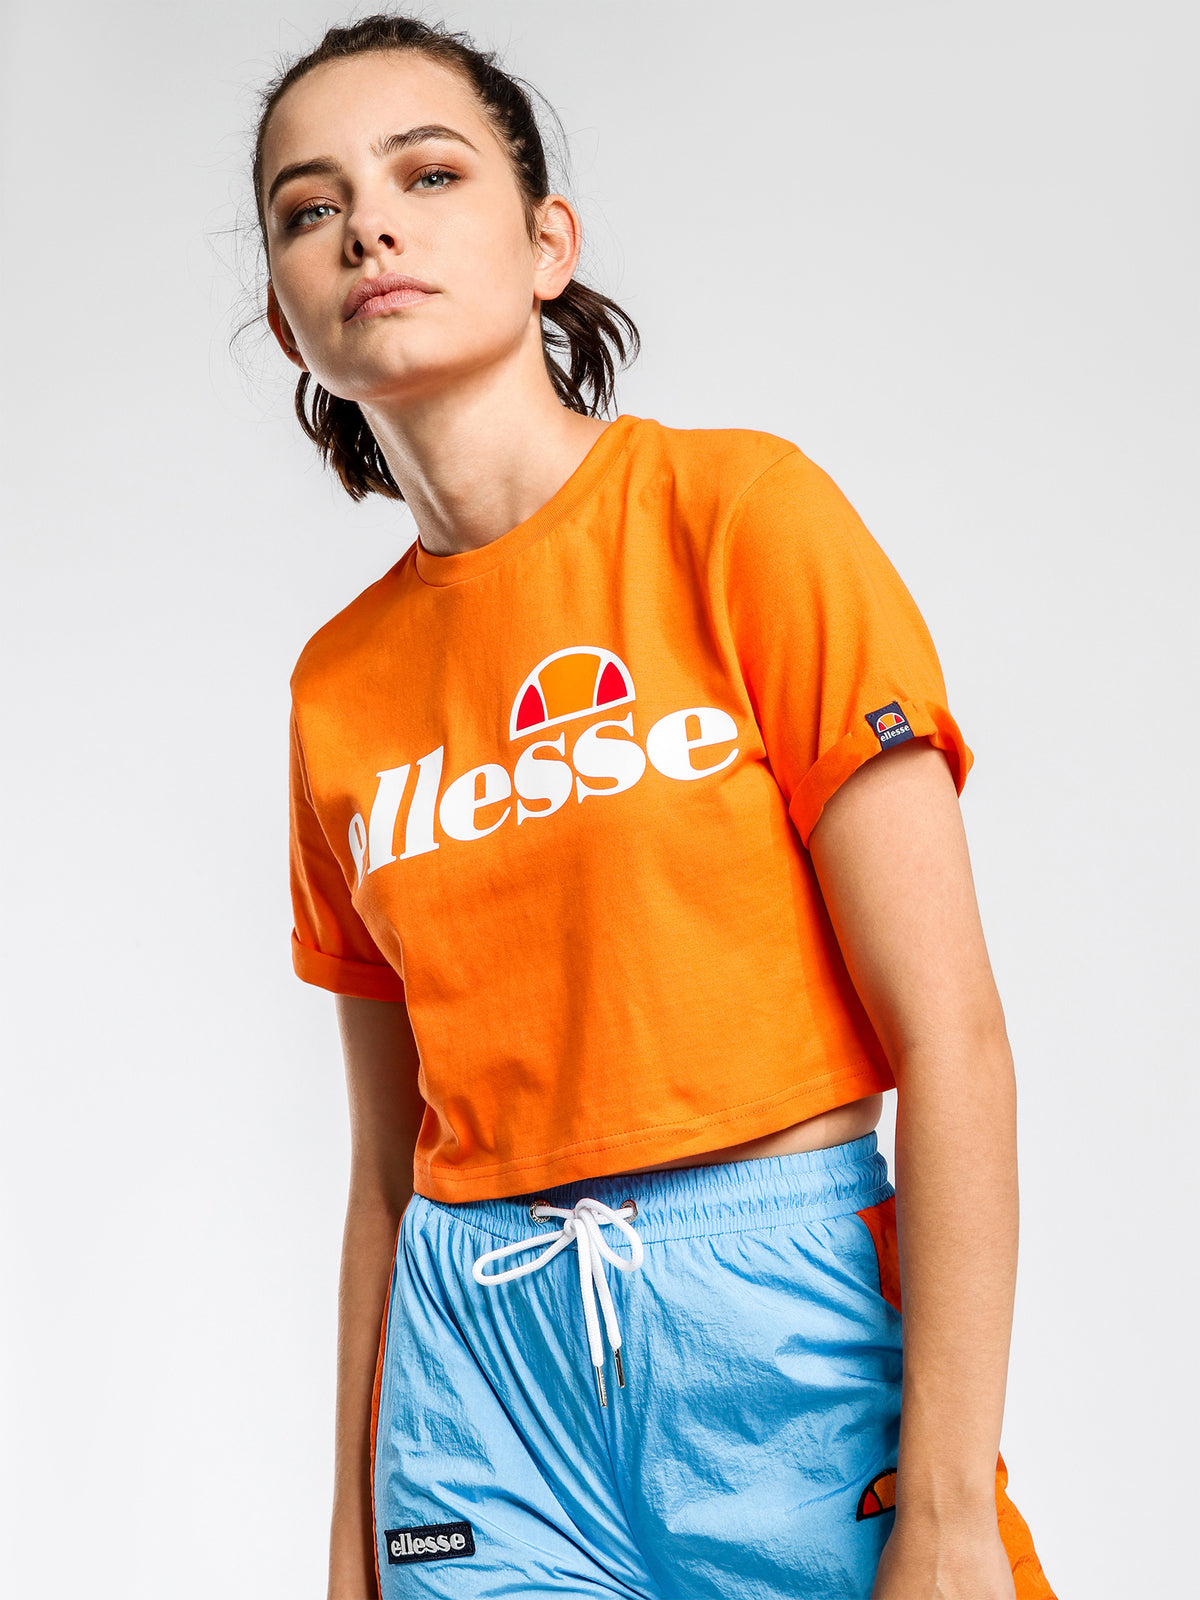 Alberta Cropped T-Shirt in Orange